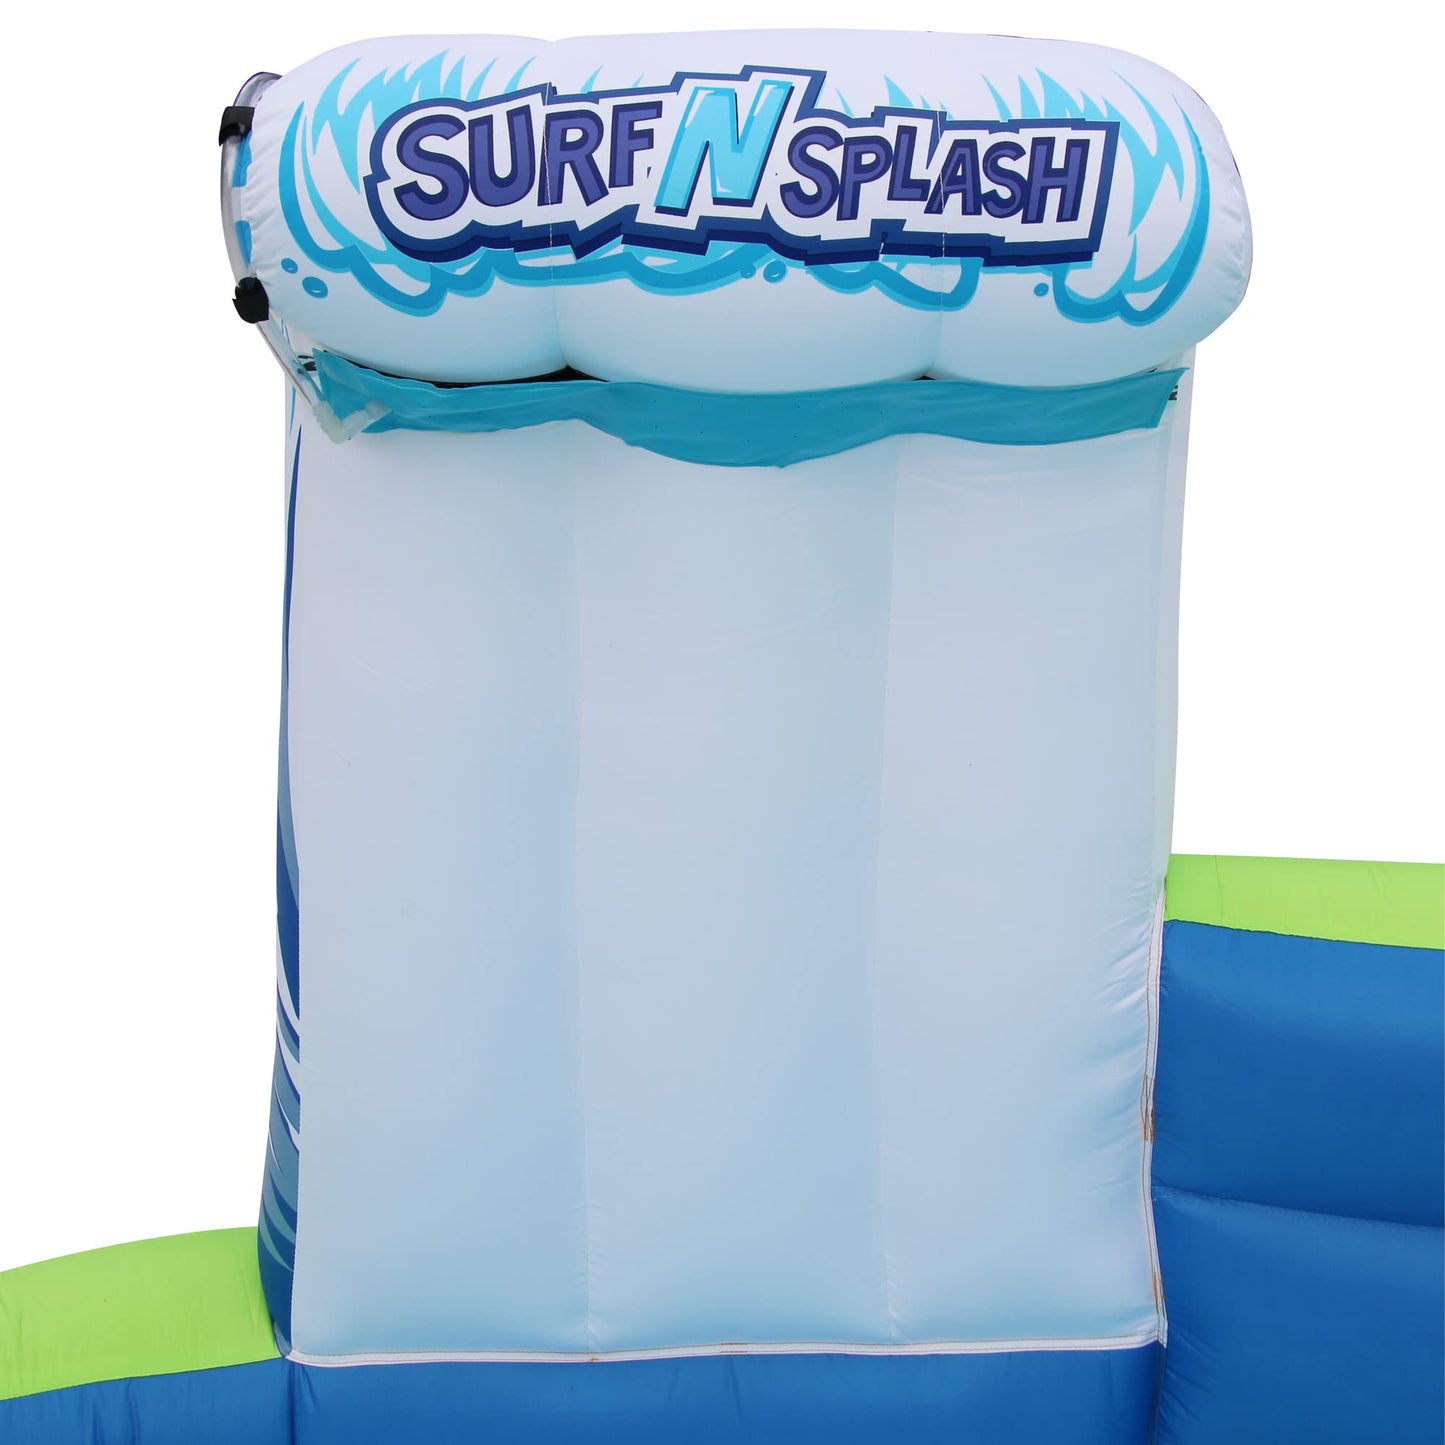 Toboggan aquatique géant gonflable - Immense piscine pour enfants (14 pieds de long sur 8 pieds de haut) avec arroseur intégré et panier de basket-ball - Parc d'aventure extérieur Surf N Splash - Souffleur inclus